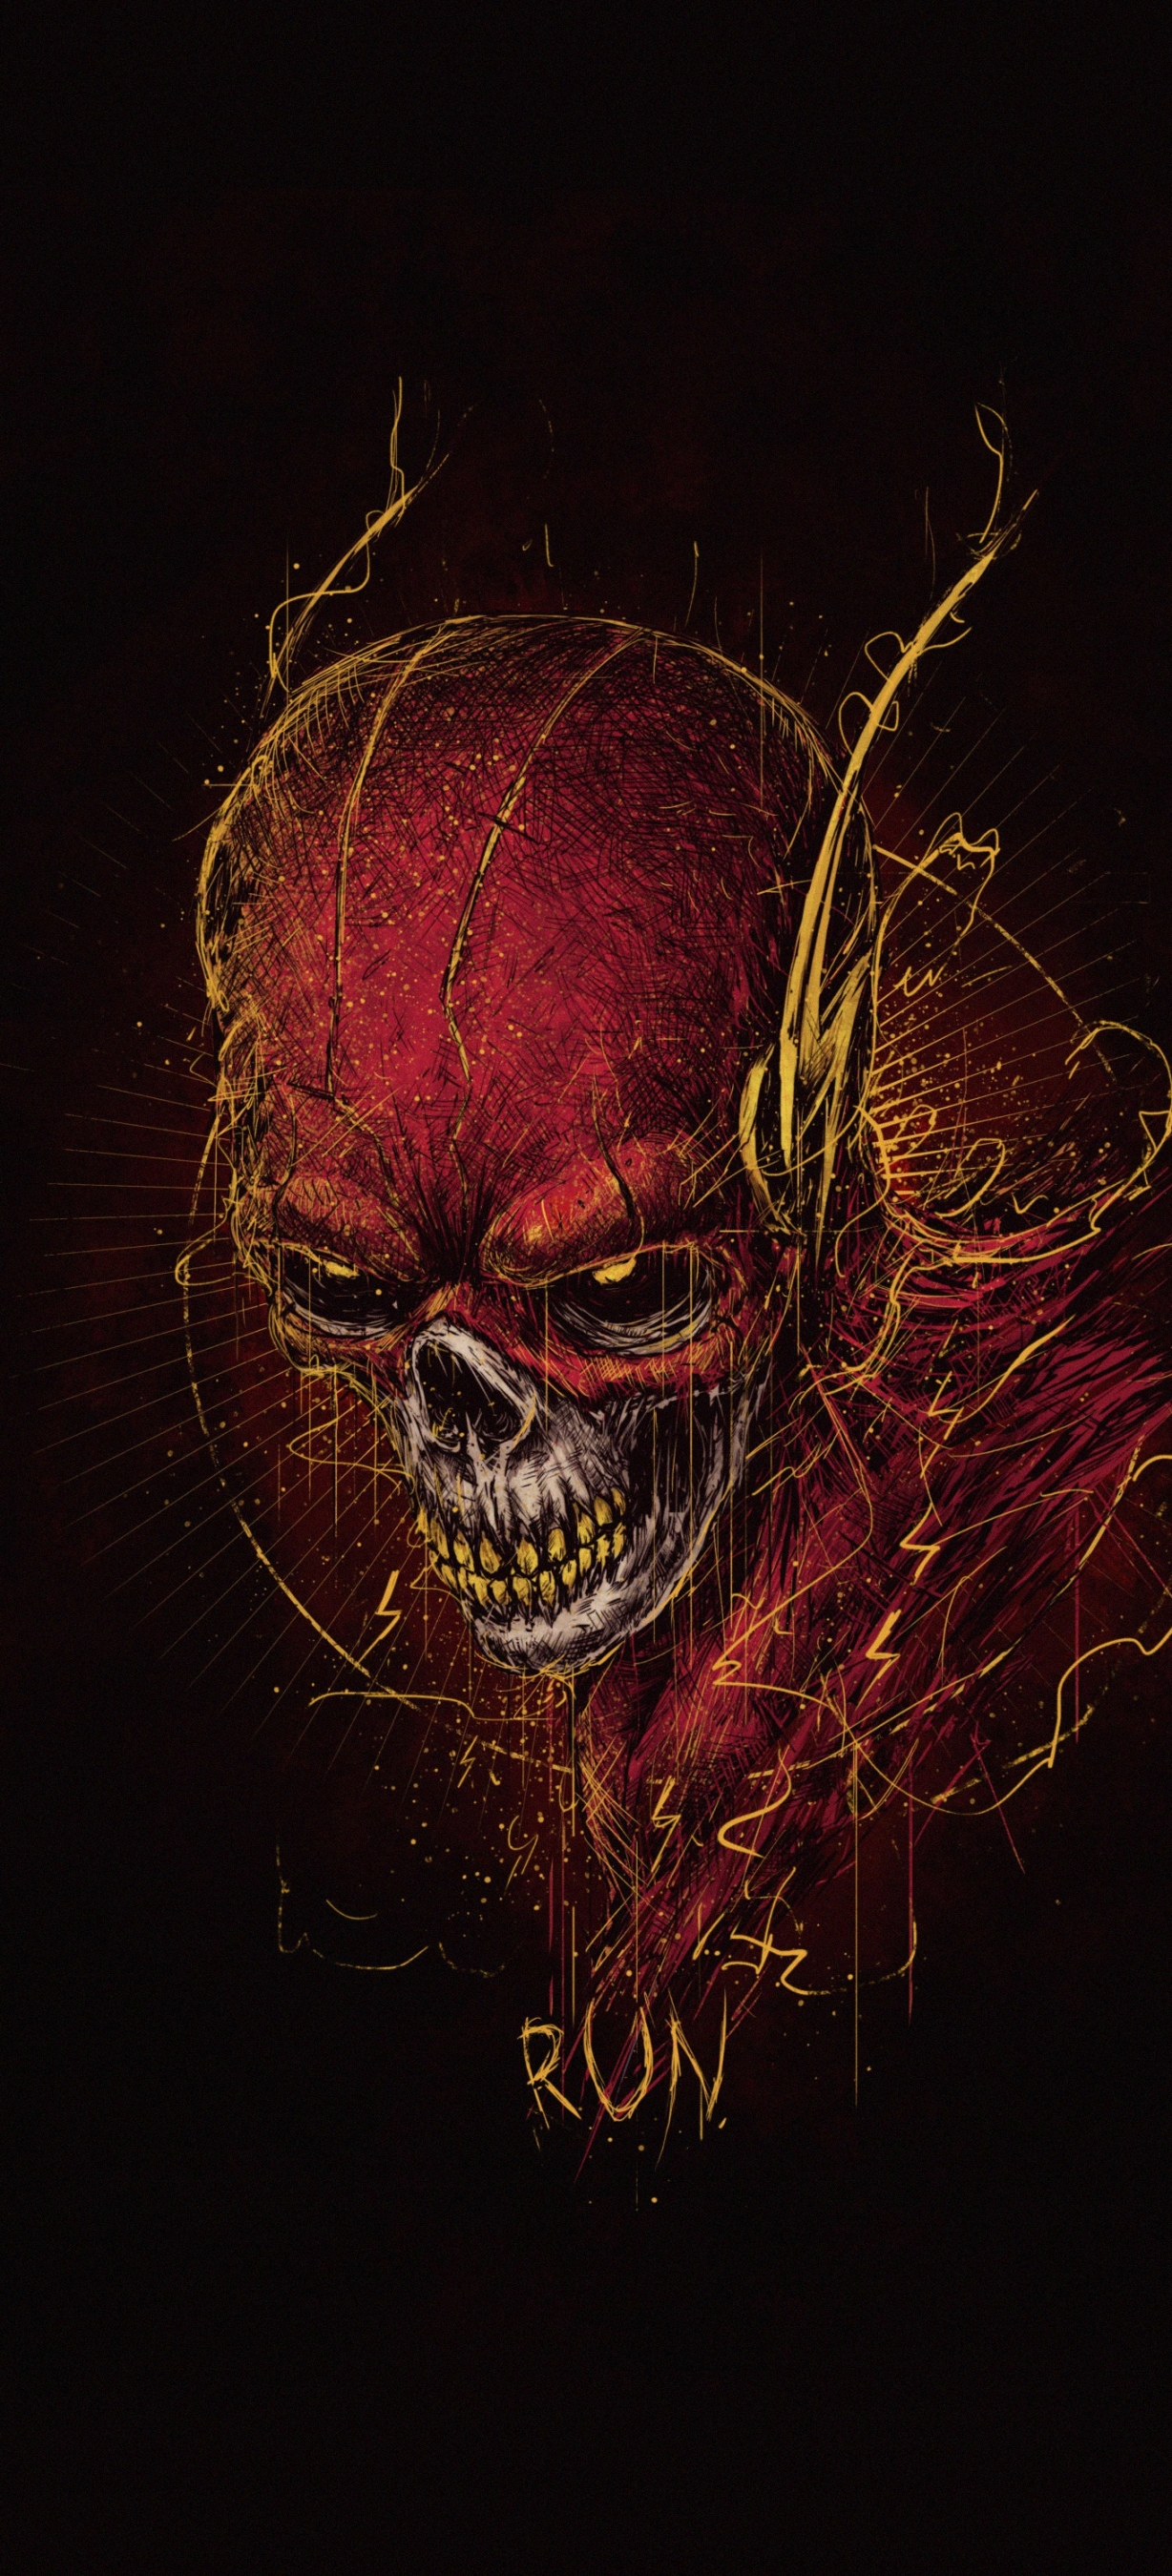 Descarga gratuita de fondo de pantalla para móvil de Destello, Historietas, Dc Comics, The Flash.